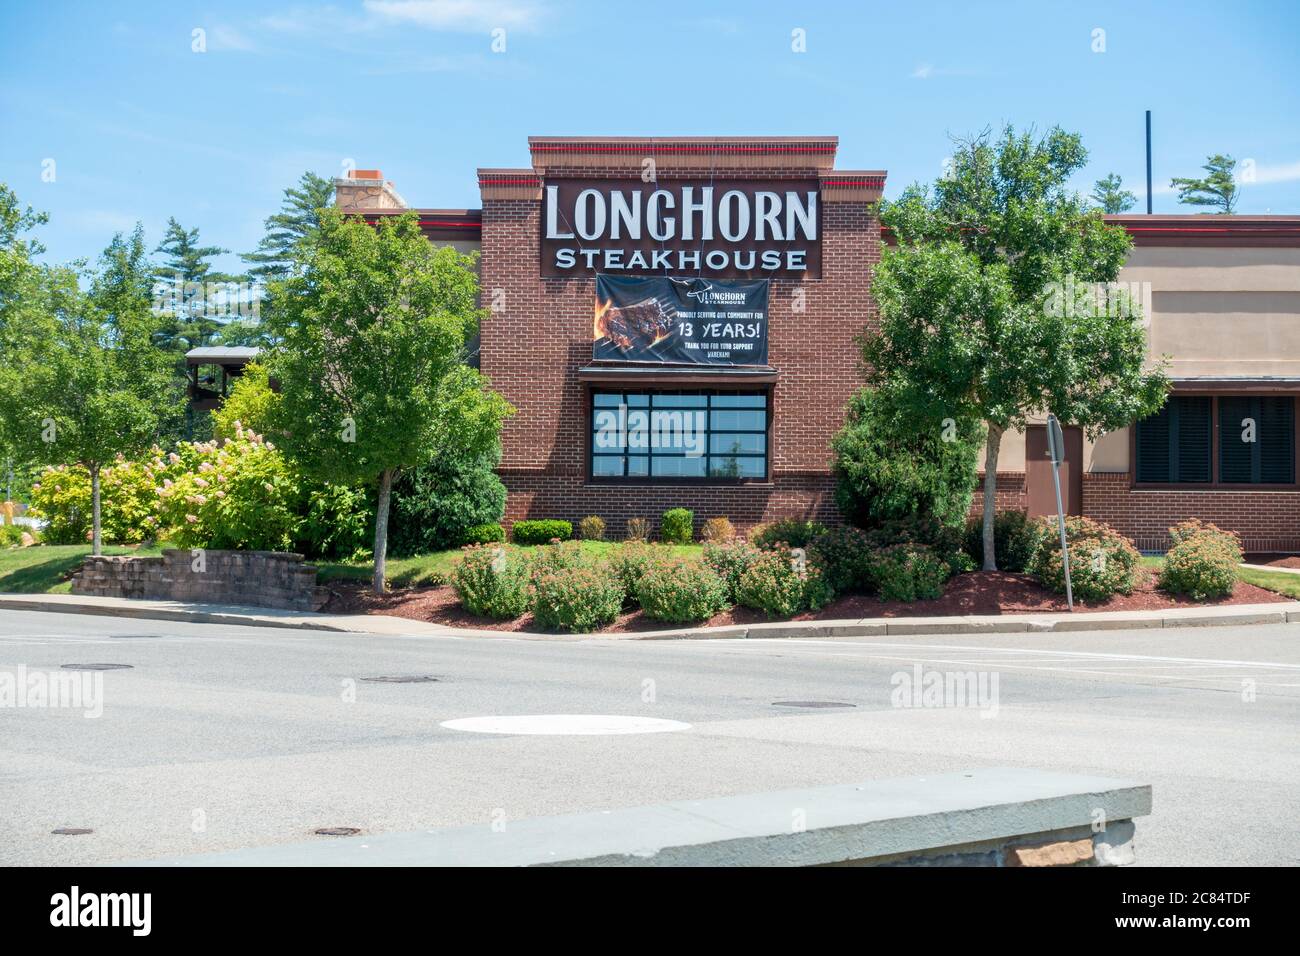 Longhorn Steakhouse restaurante cadena exterior con signo en el edificio de ladrillo, parte de Darden restaurantes, Inc. Foto de stock